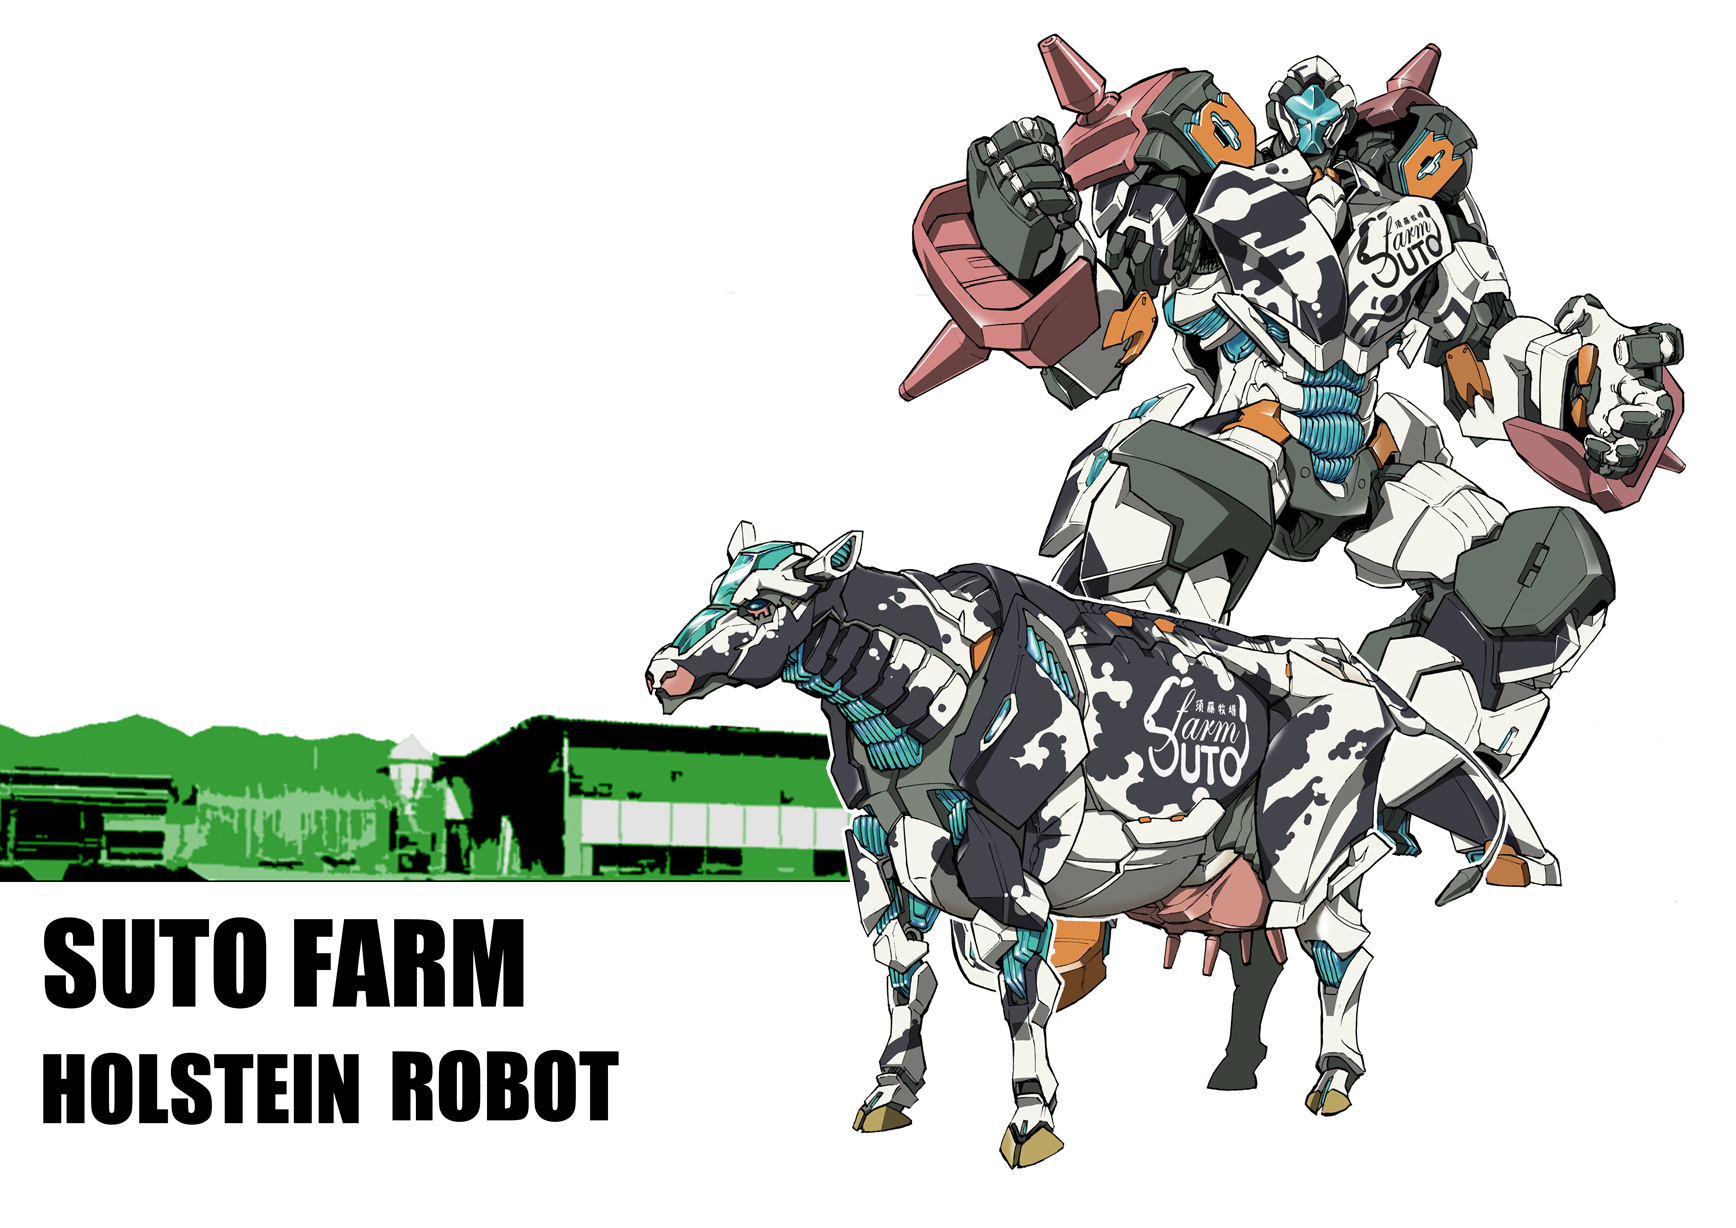 SUTO FARM HOLSTEIN ROBOT